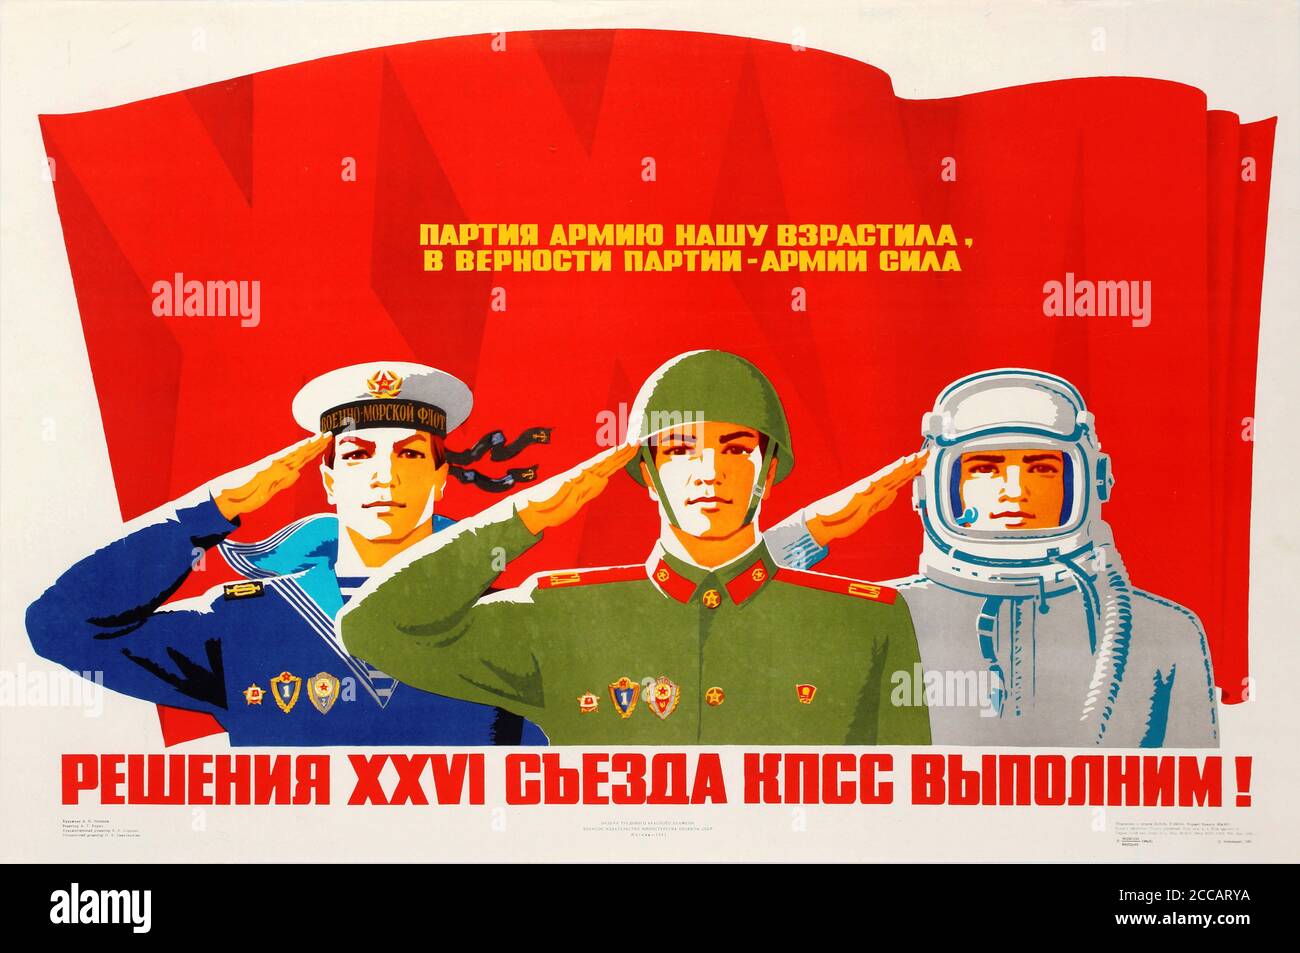 Wir werden die Resolutionen des 26. Parteitags der Kommunistischen Partei erfüllen!. Museum: PRIVATE SAMMLUNG. Autor: V. V. Potapov. Stockfoto